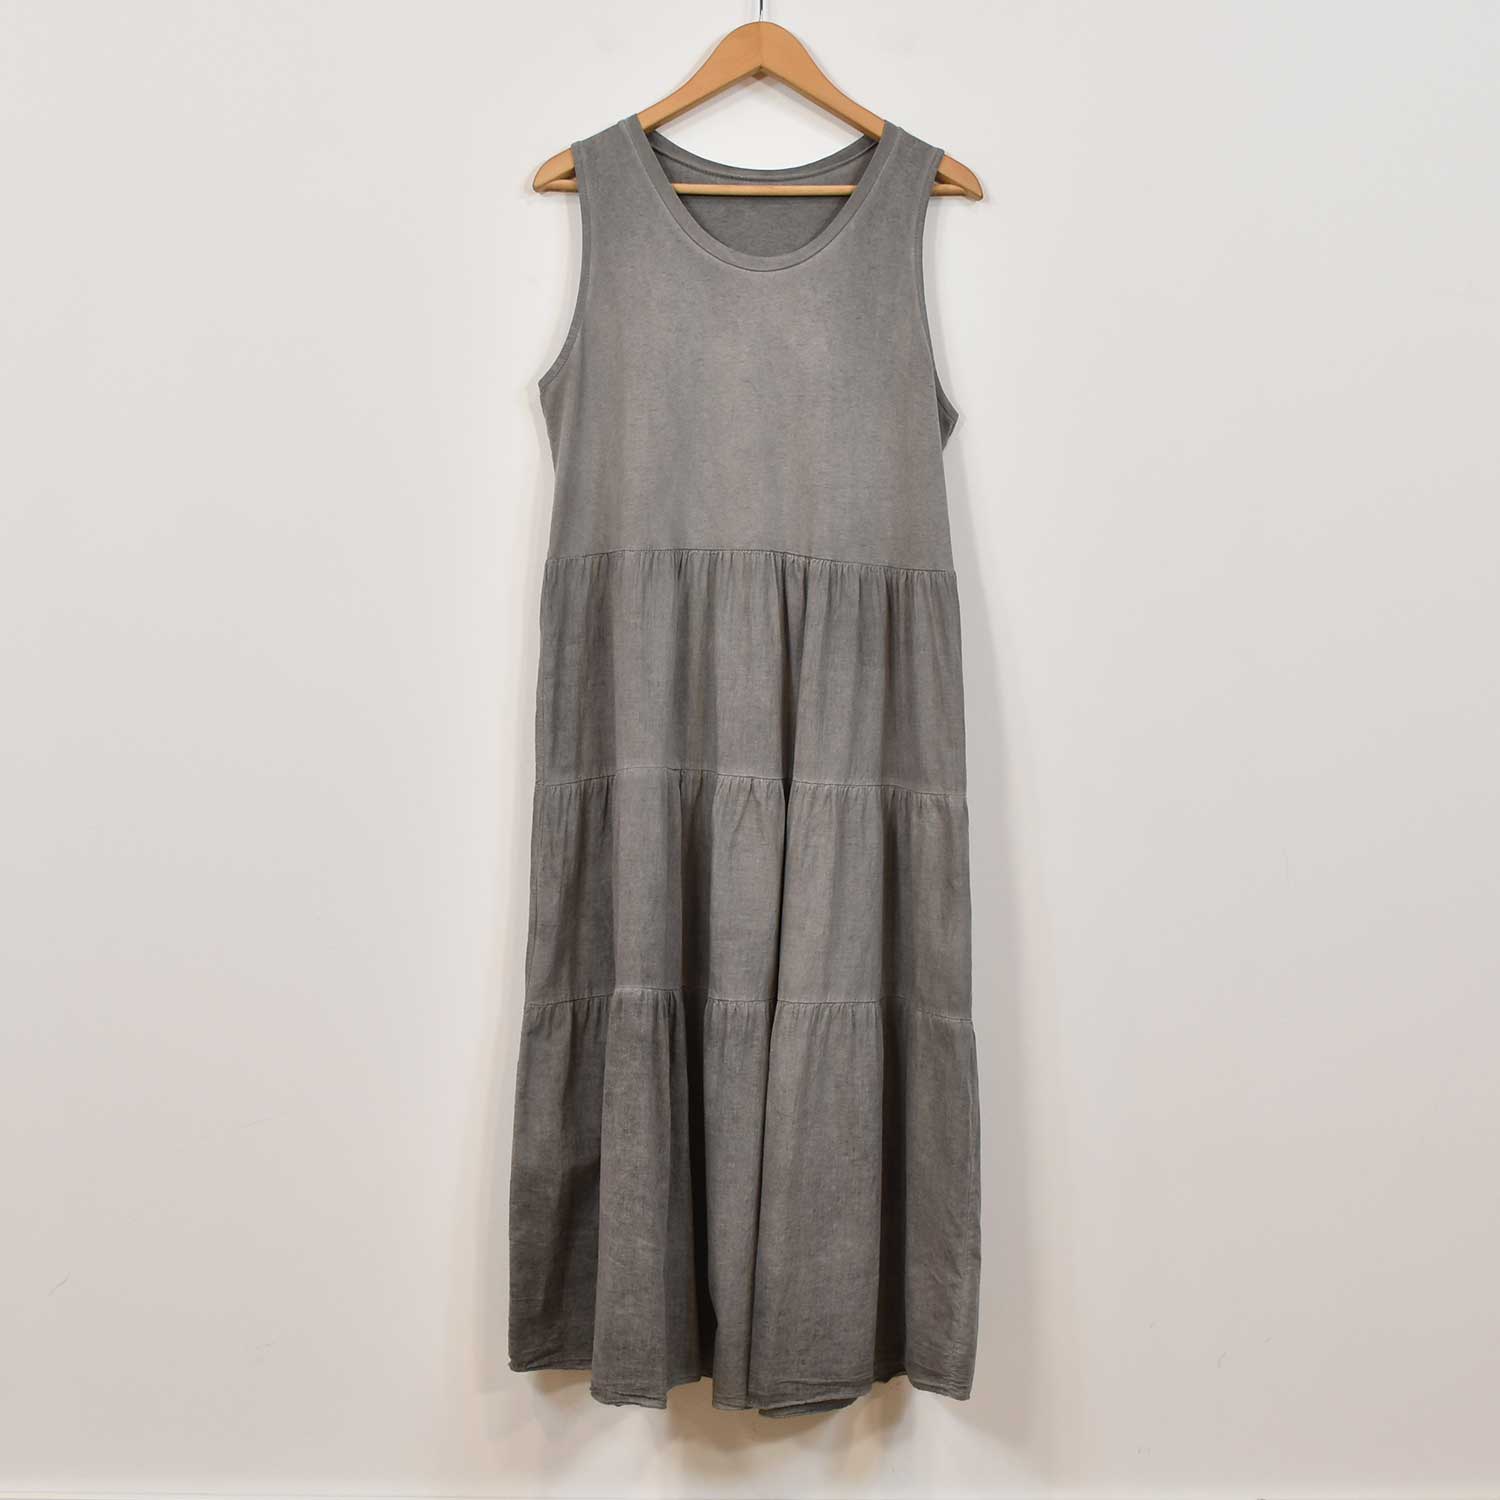 Grey stitching dress
